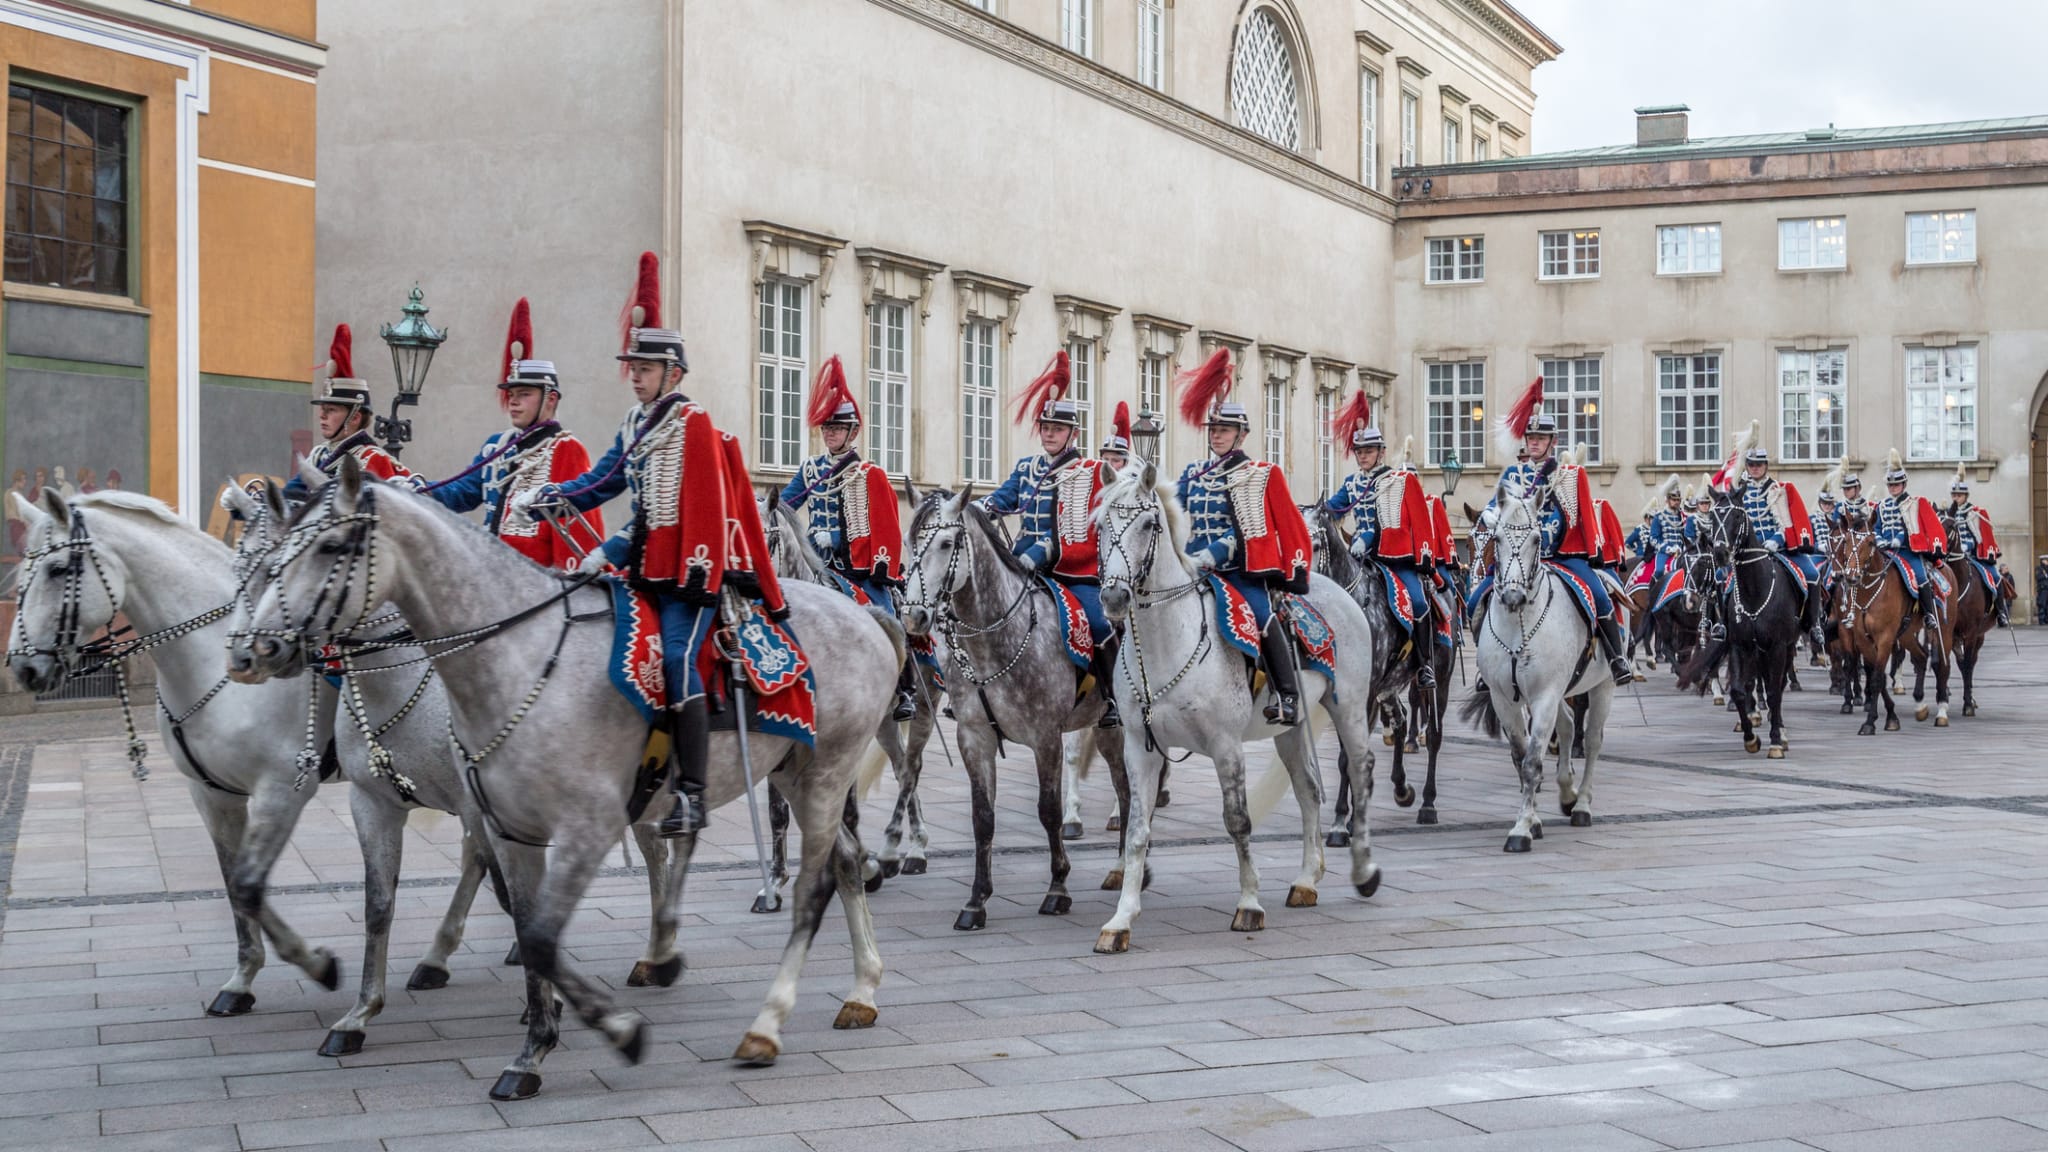 Königliche Parade, Neujahr, Kopenhagen © olli0815/iStock Editorial / Getty Images Plus via Getty Images